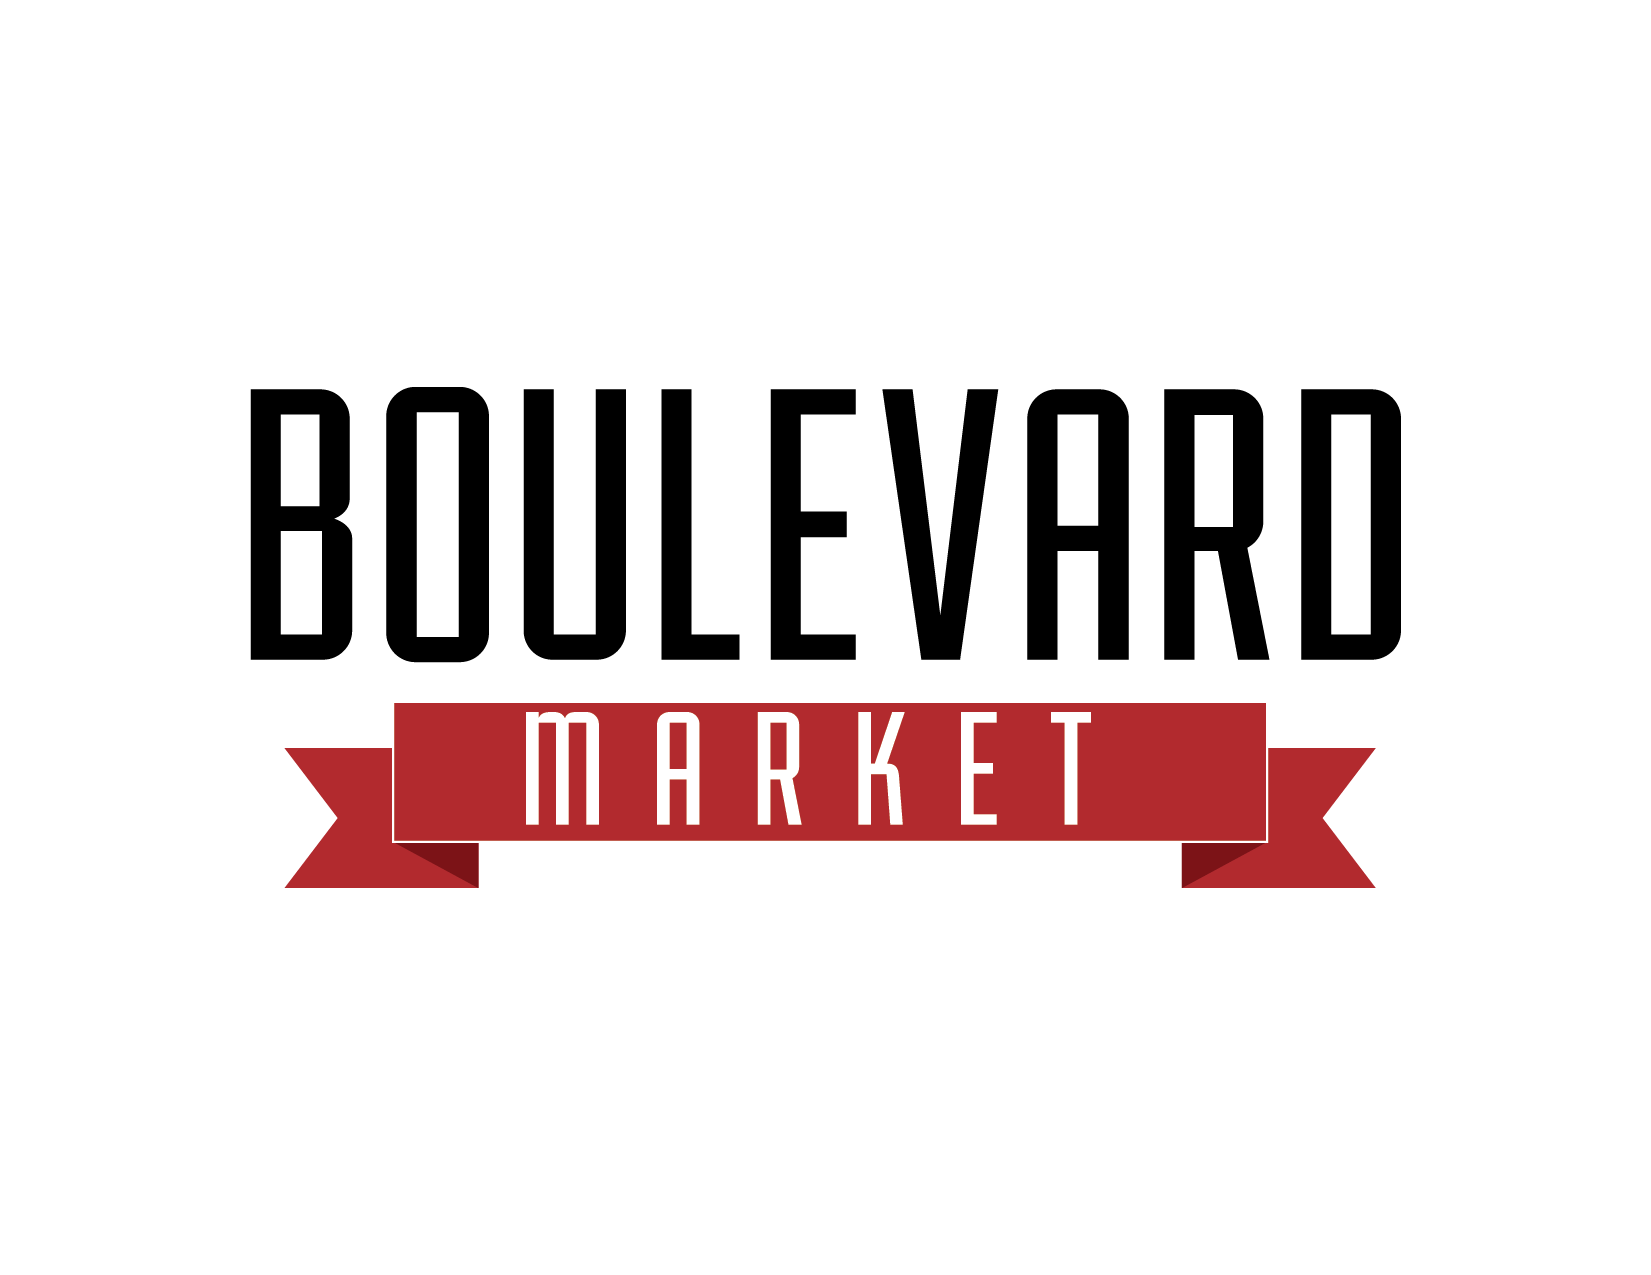 Boulevard Bistro Market